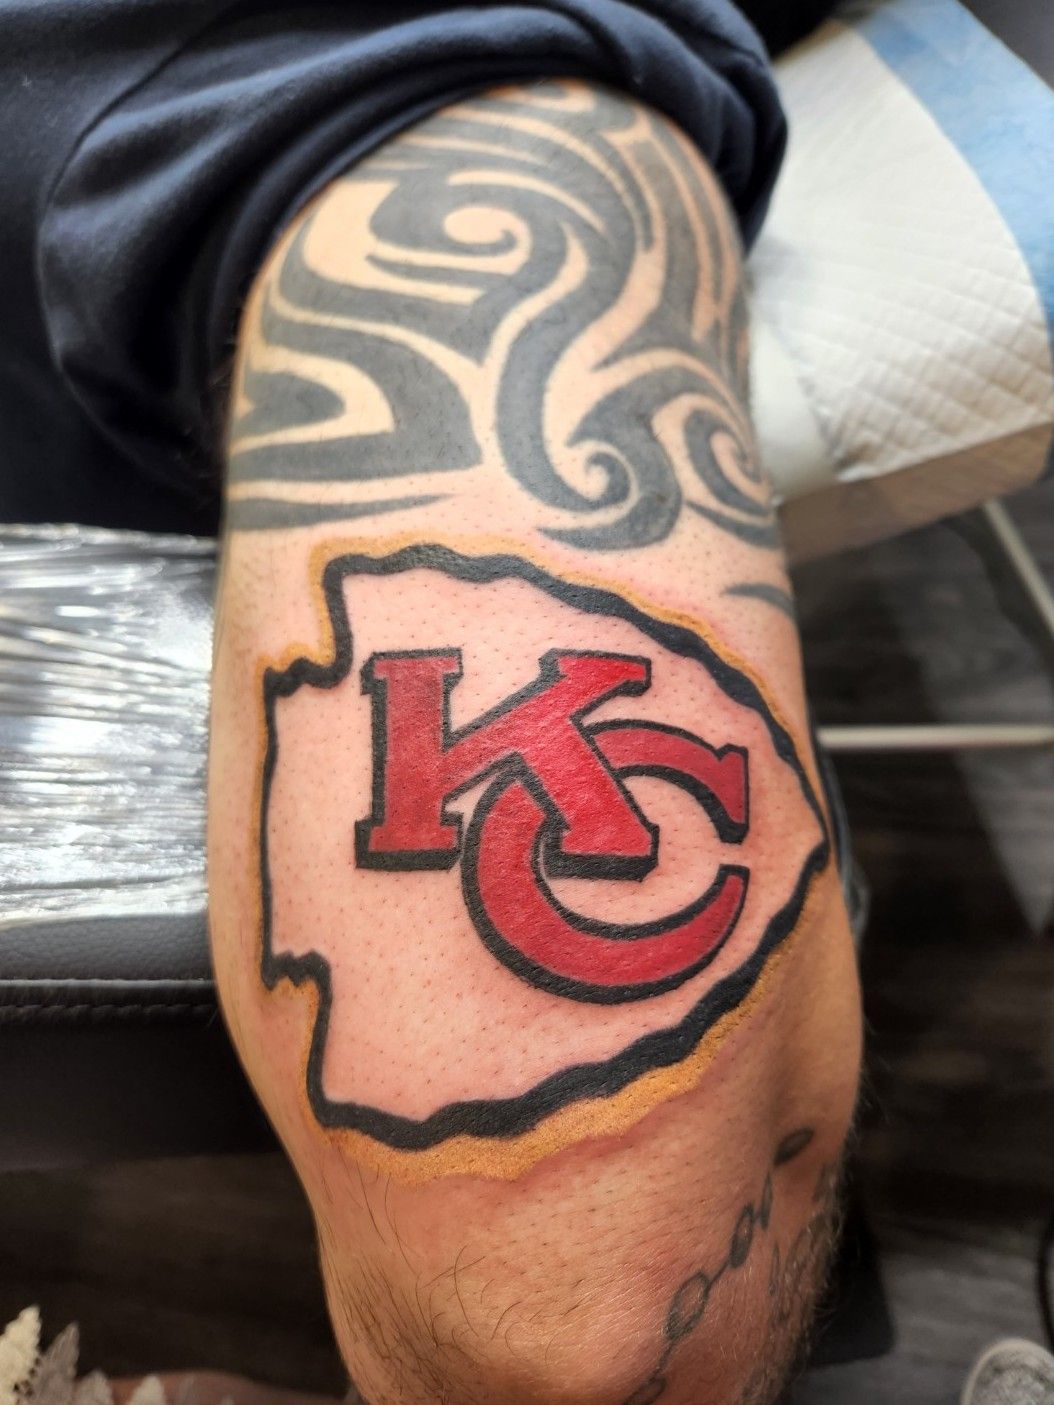 Shane Ray Broncos linebacker gets a Kansas City Chiefs tattoo  The  Denver Post